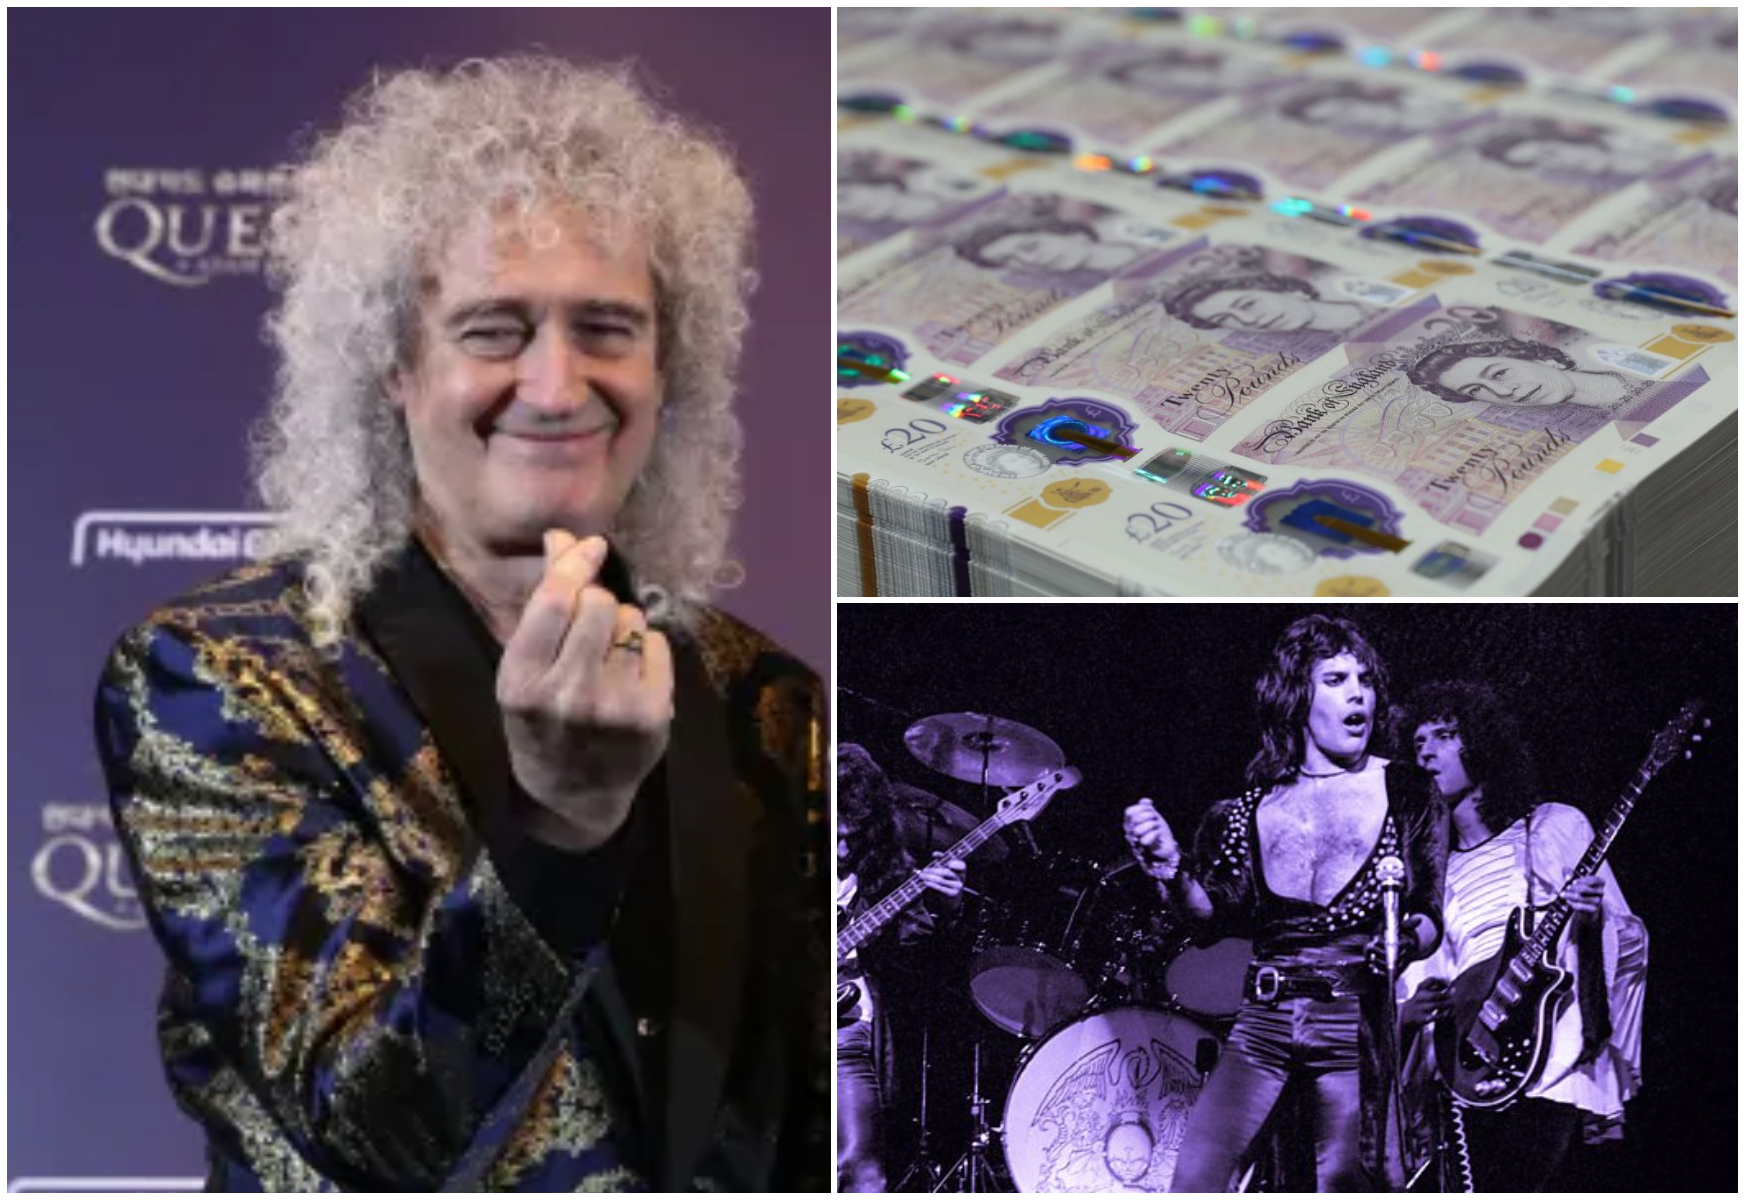 S-a vândut catalogul muzical al trupei Queen pentru 1 miliard de lire sterline. Este cea mai mare tranzacție din istoria muzicii